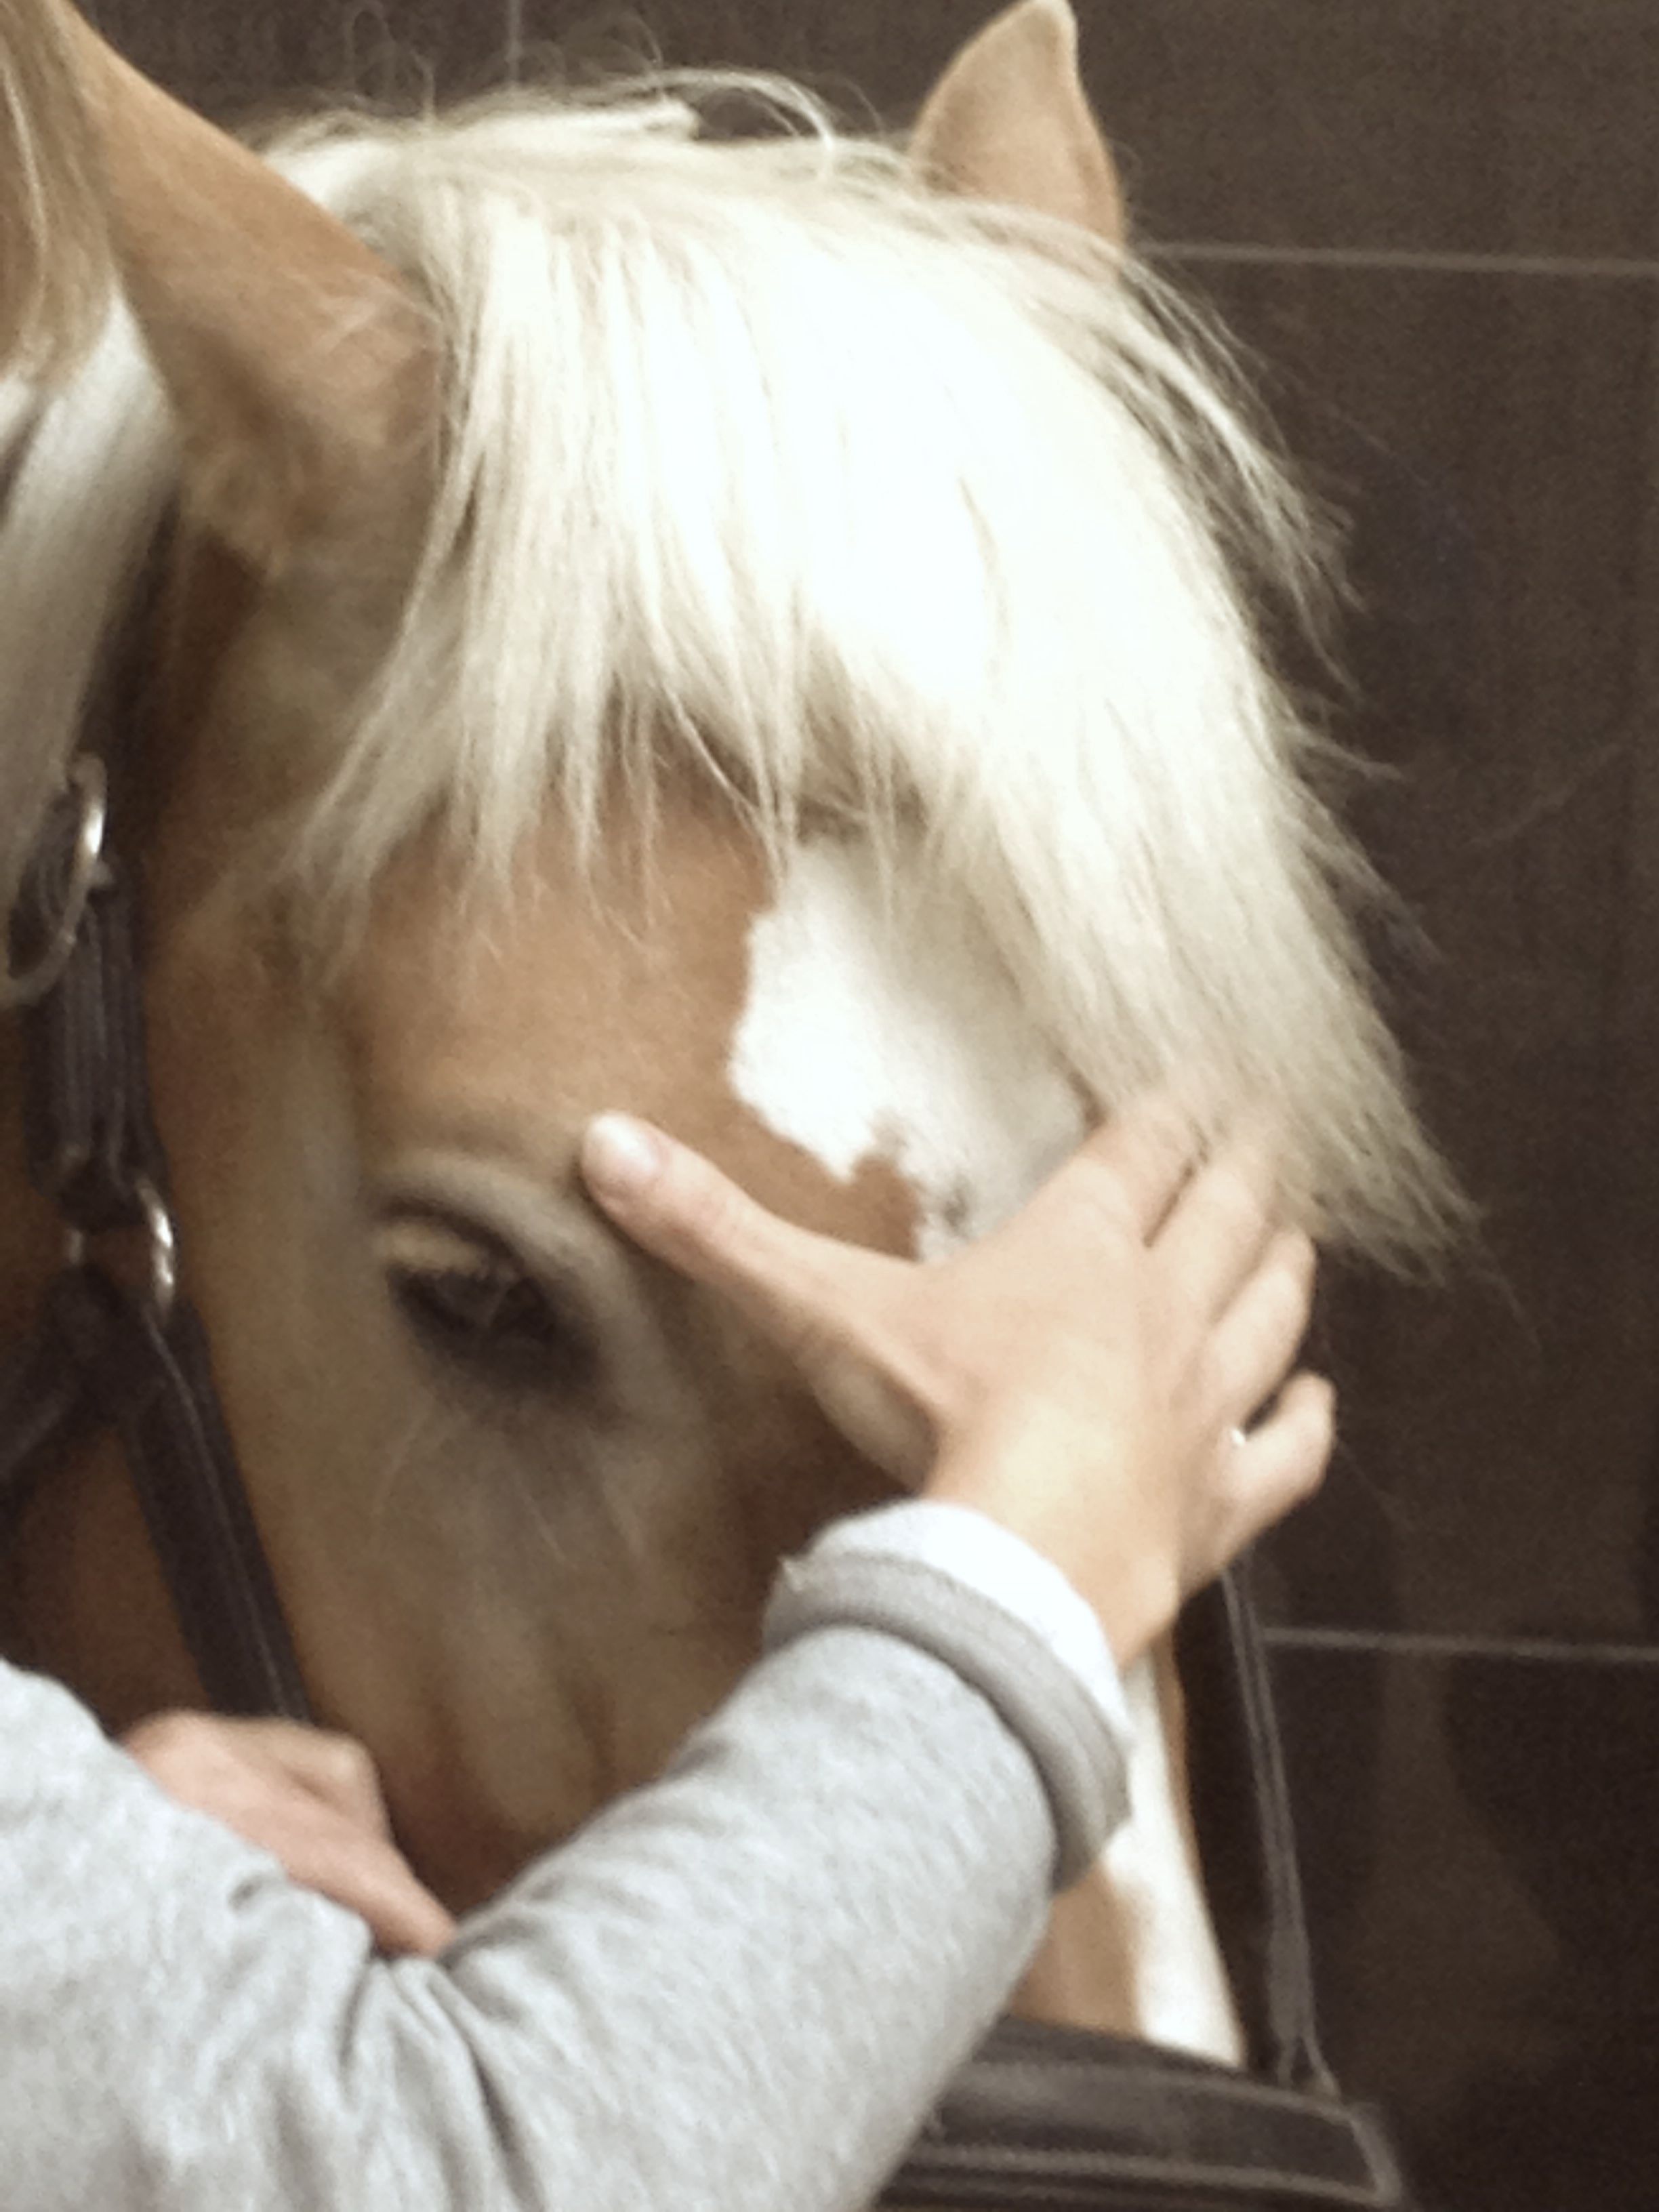 Cranio sacraal therapie bij paarden